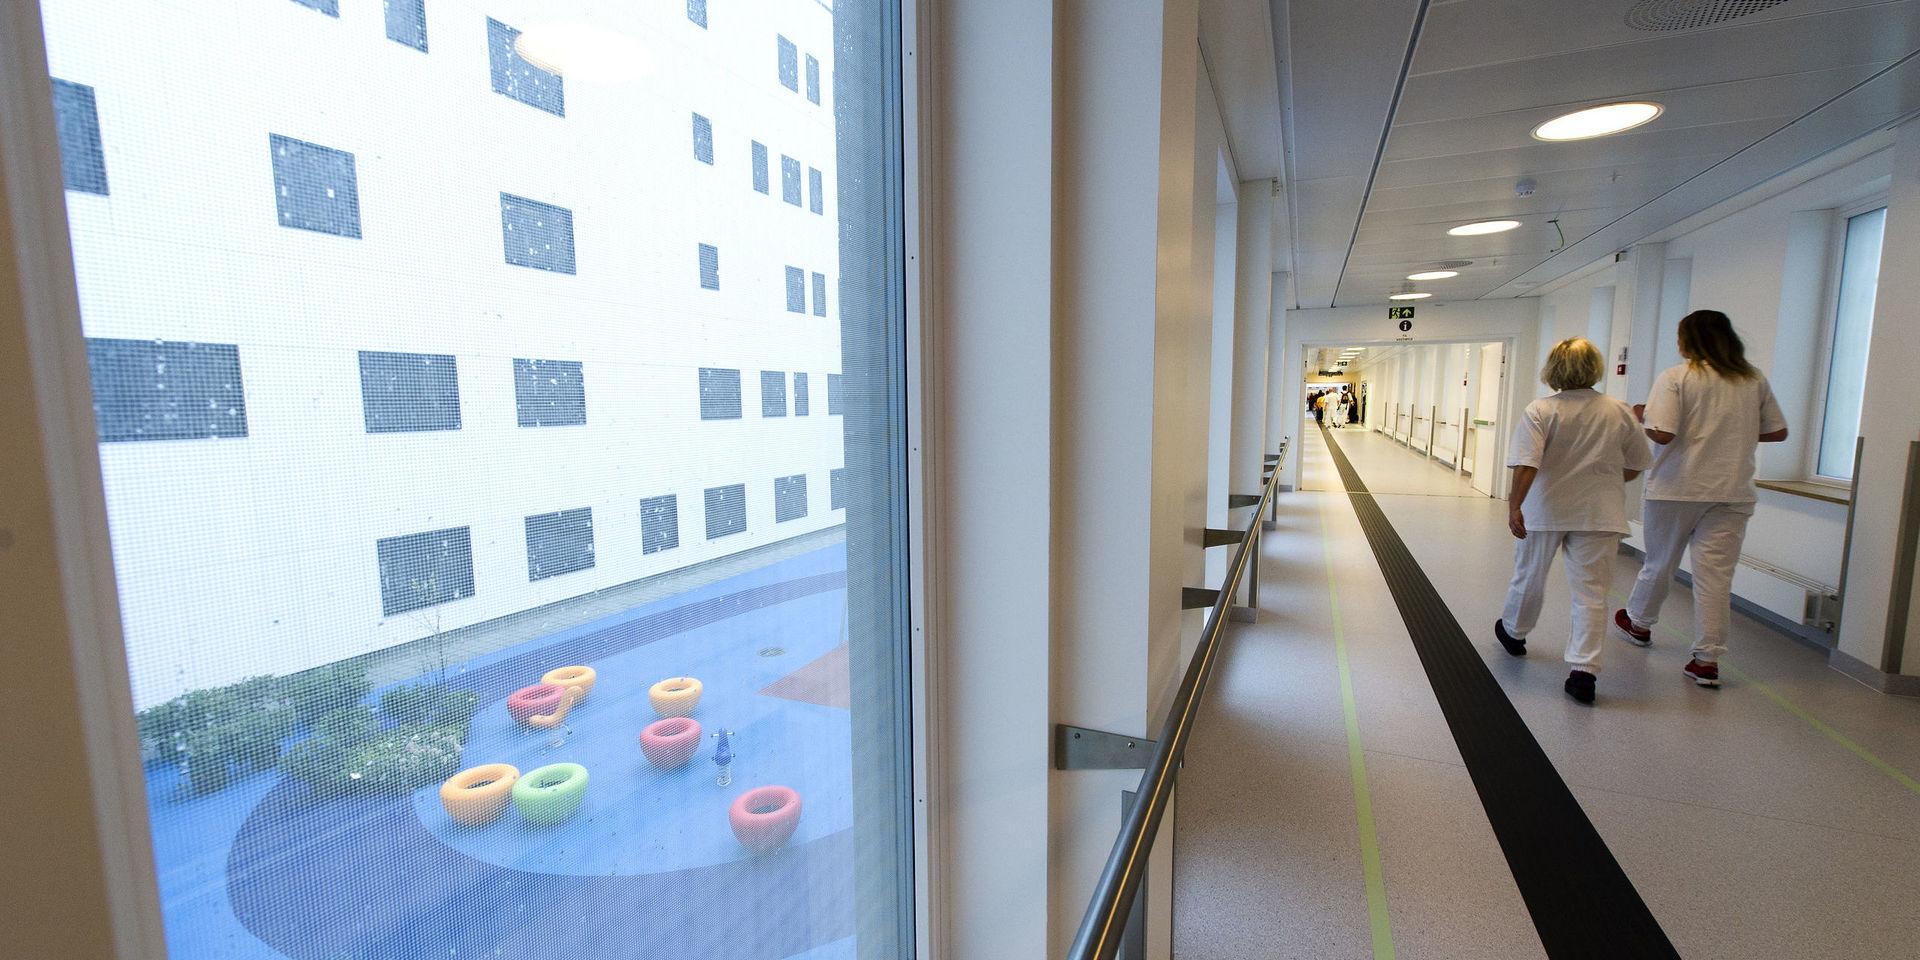 Kalnes sjukhus, som tar emot blåljuspatienter och födande kvinnor från norra Bohuslän, är en del av Sykehuset Østfold.